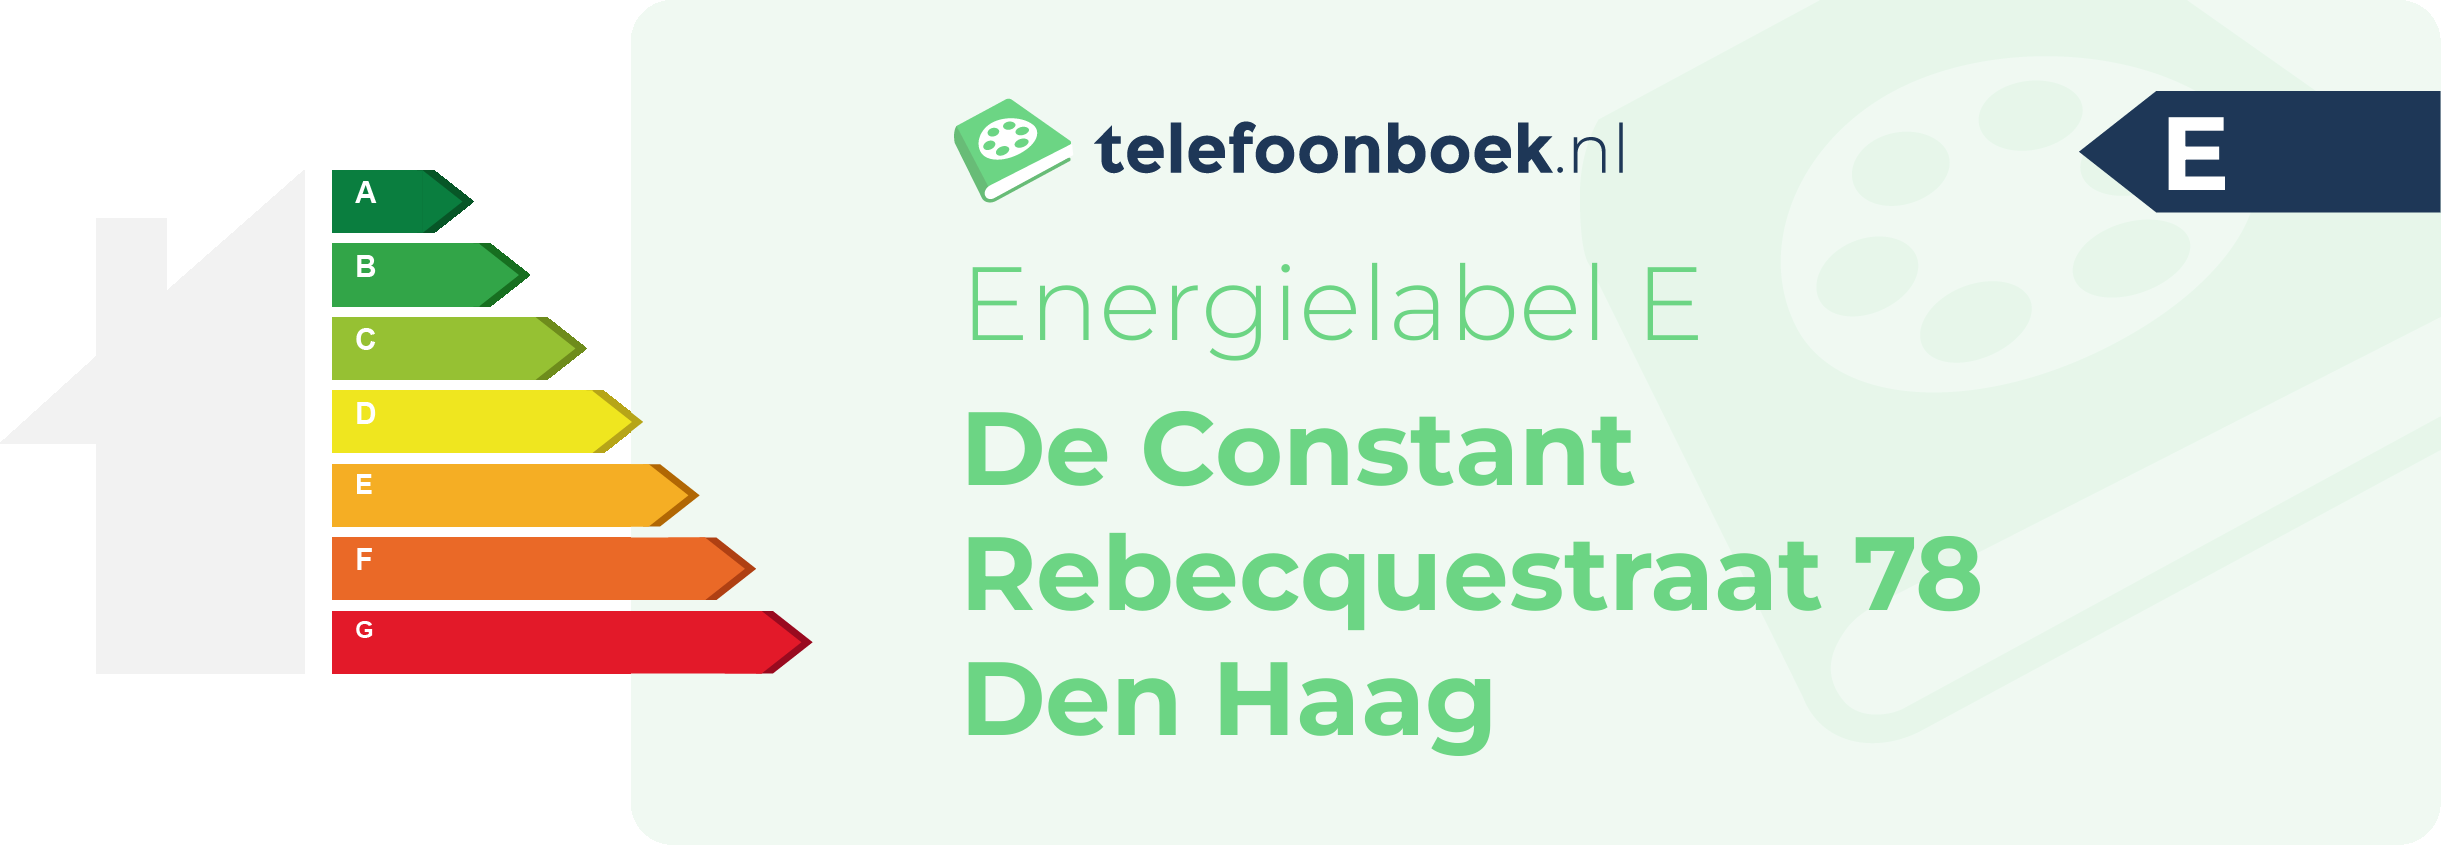 Energielabel De Constant Rebecquestraat 78 Den Haag